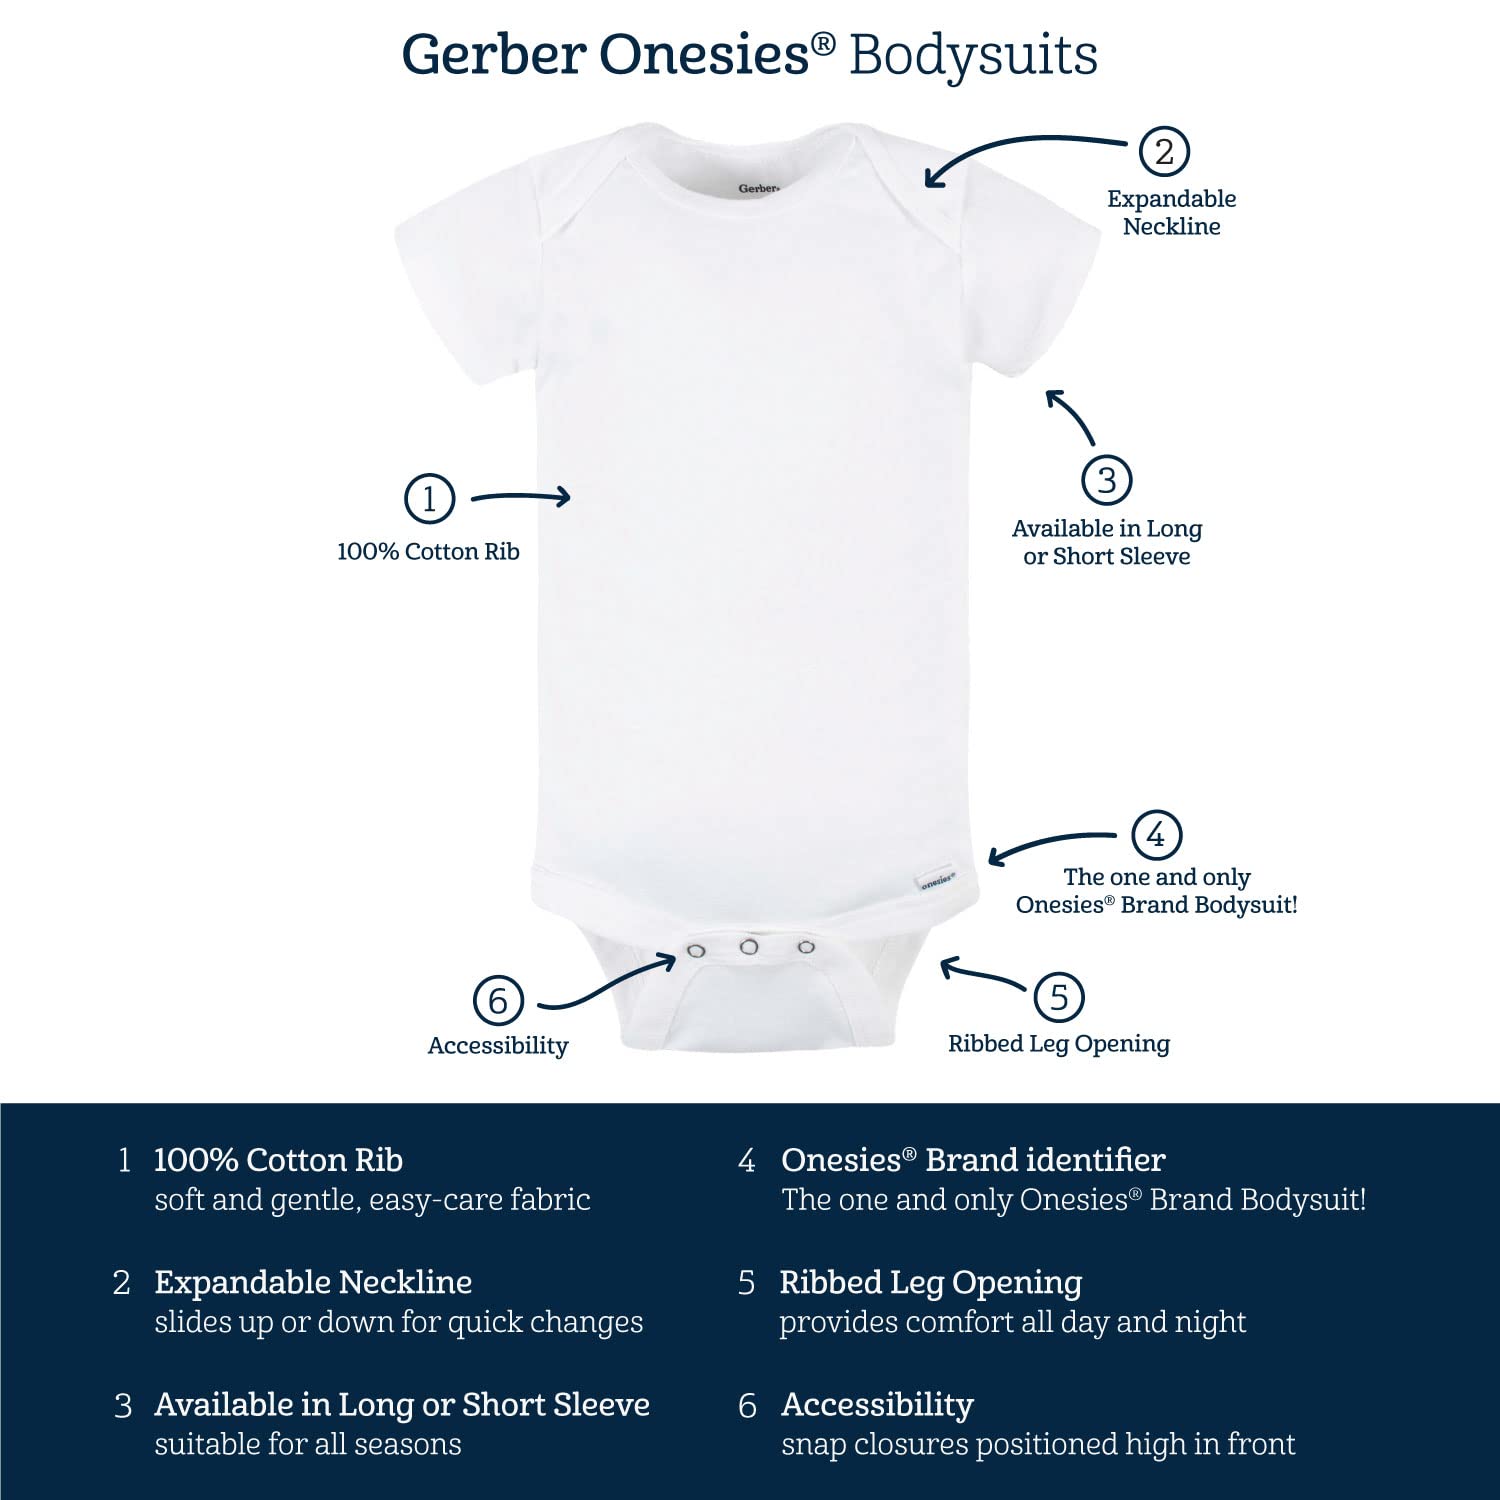 Gerber baby-girls 5-pack Short Sleeve Variety Onesies Bodysuits